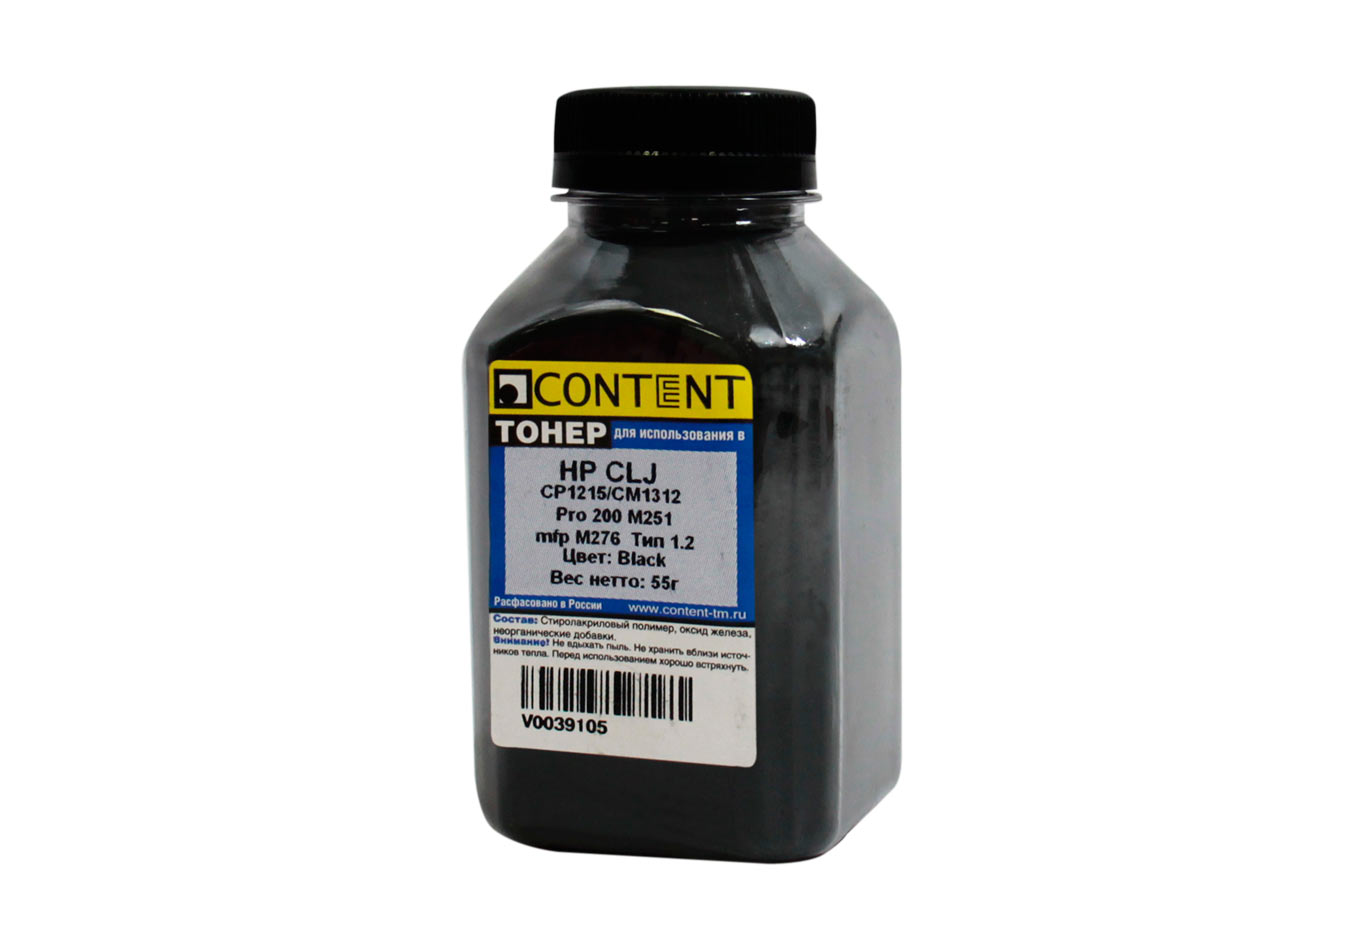 Тонер Content, бутыль 55 г, черный, совместимый для Canon CLJ CM1300/CM1312/CP1210/CP1215/Pro CP1525/CM1415/Pro 200 M251/mfp M276, I-Sensis LBP-7100/7110/MF8230/8280, Тип 1.2 (V0039105)